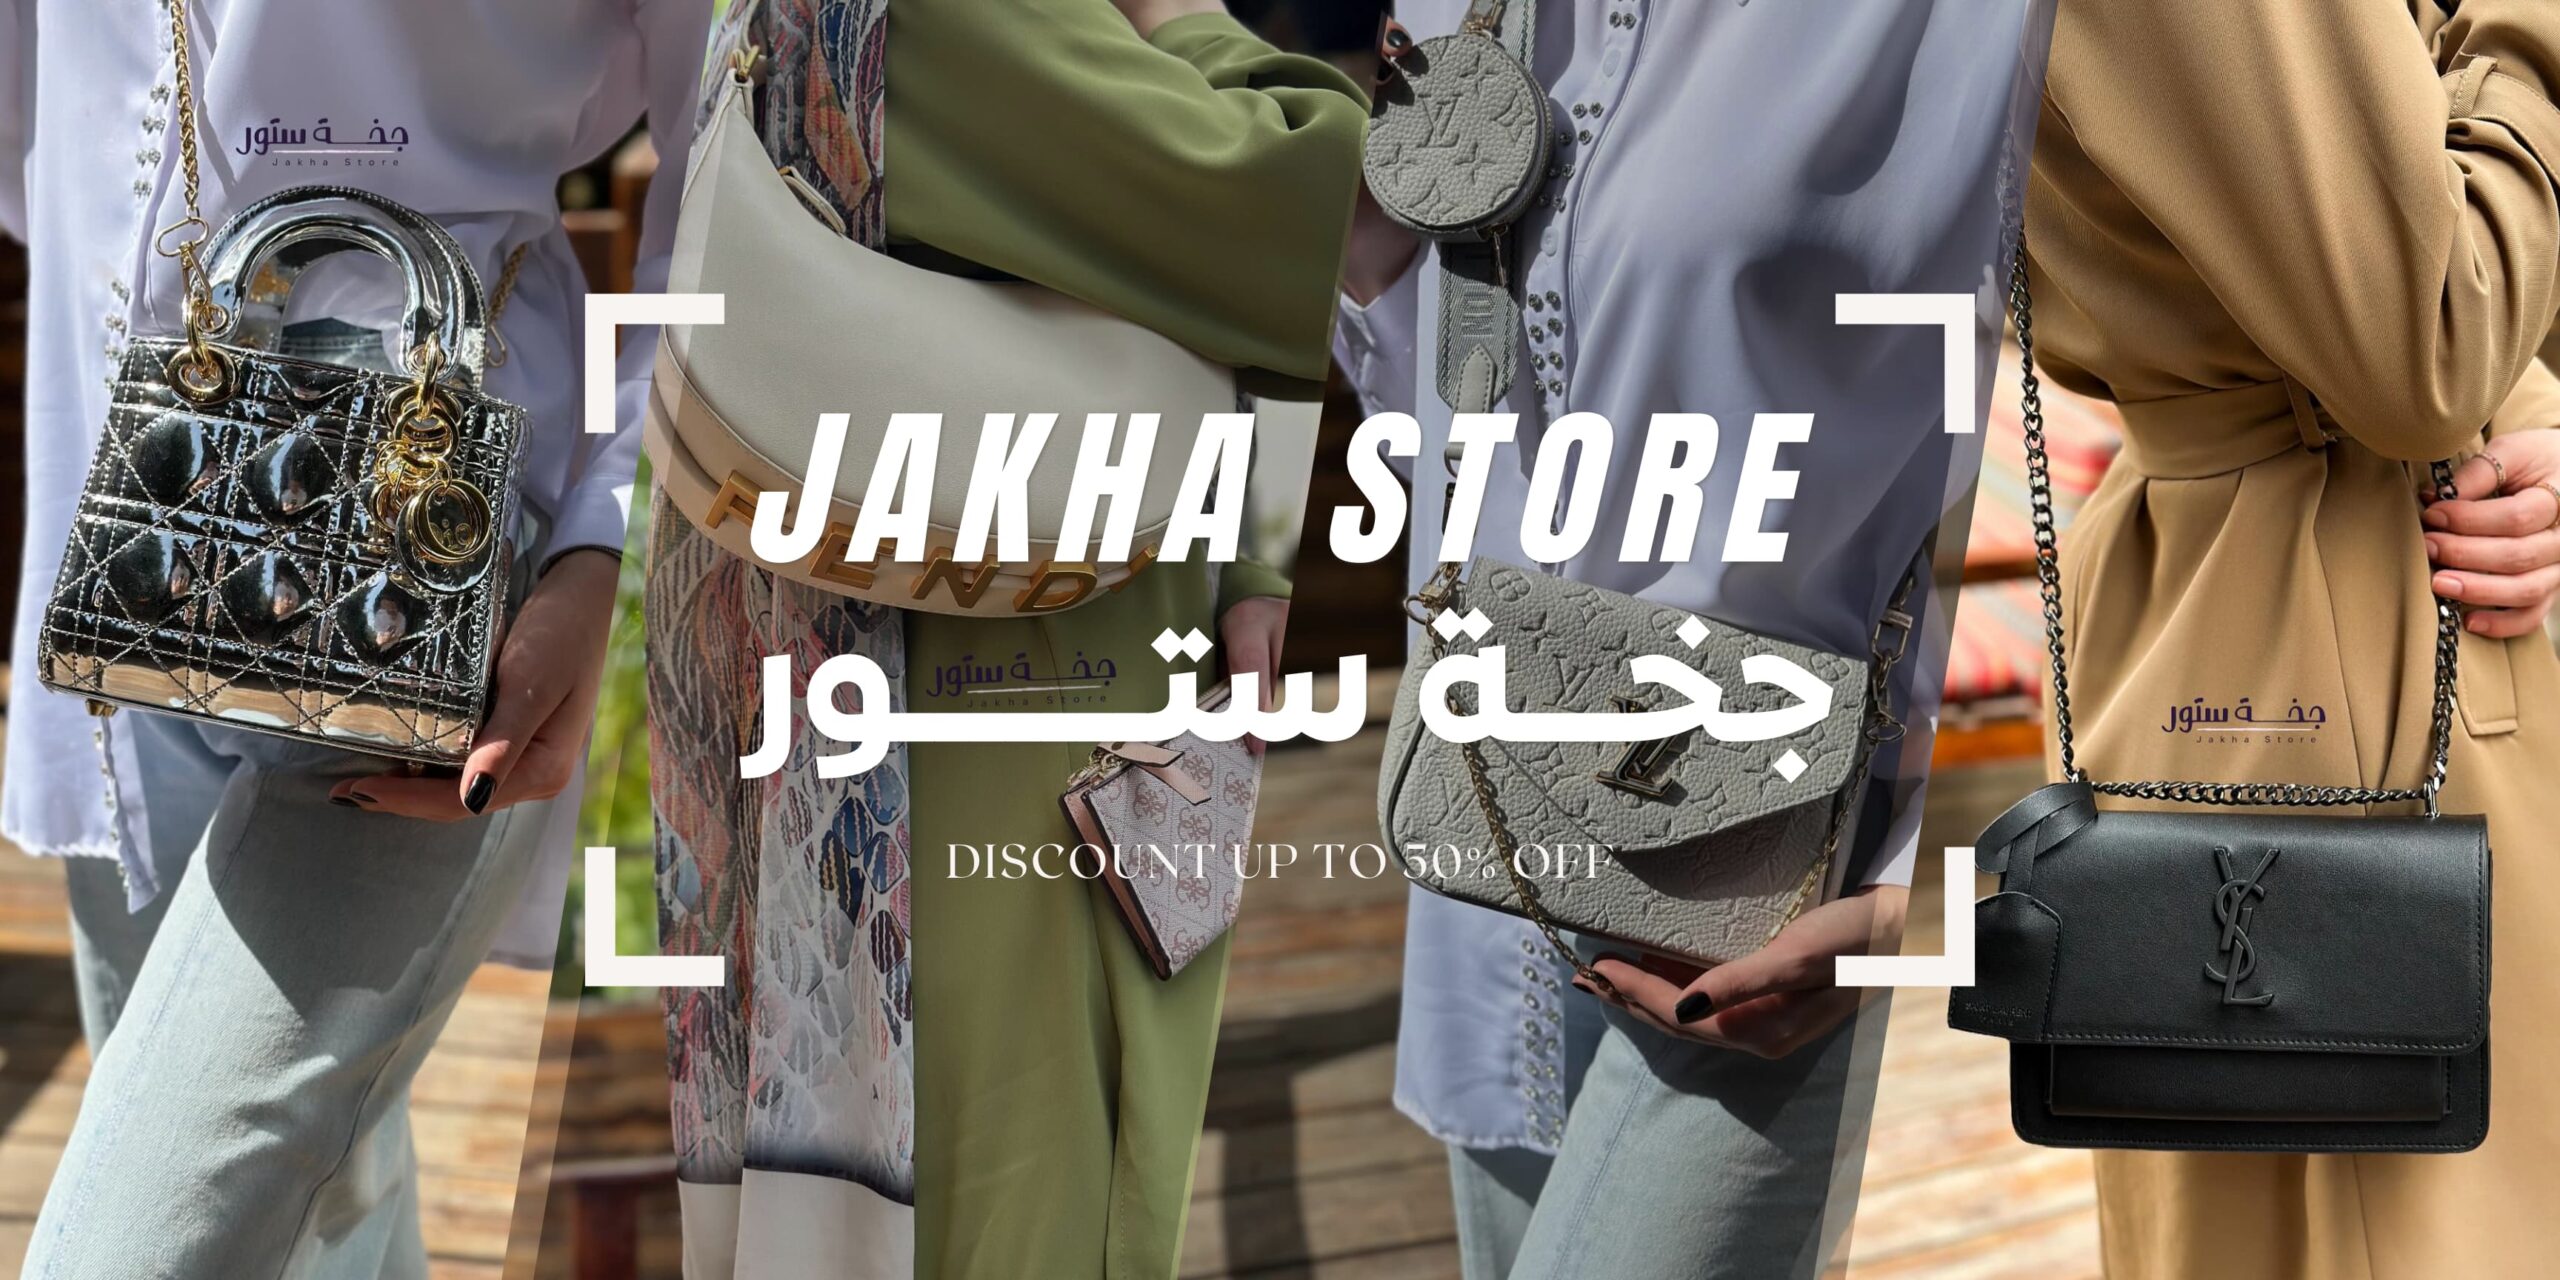 jakha-store-banners (4)